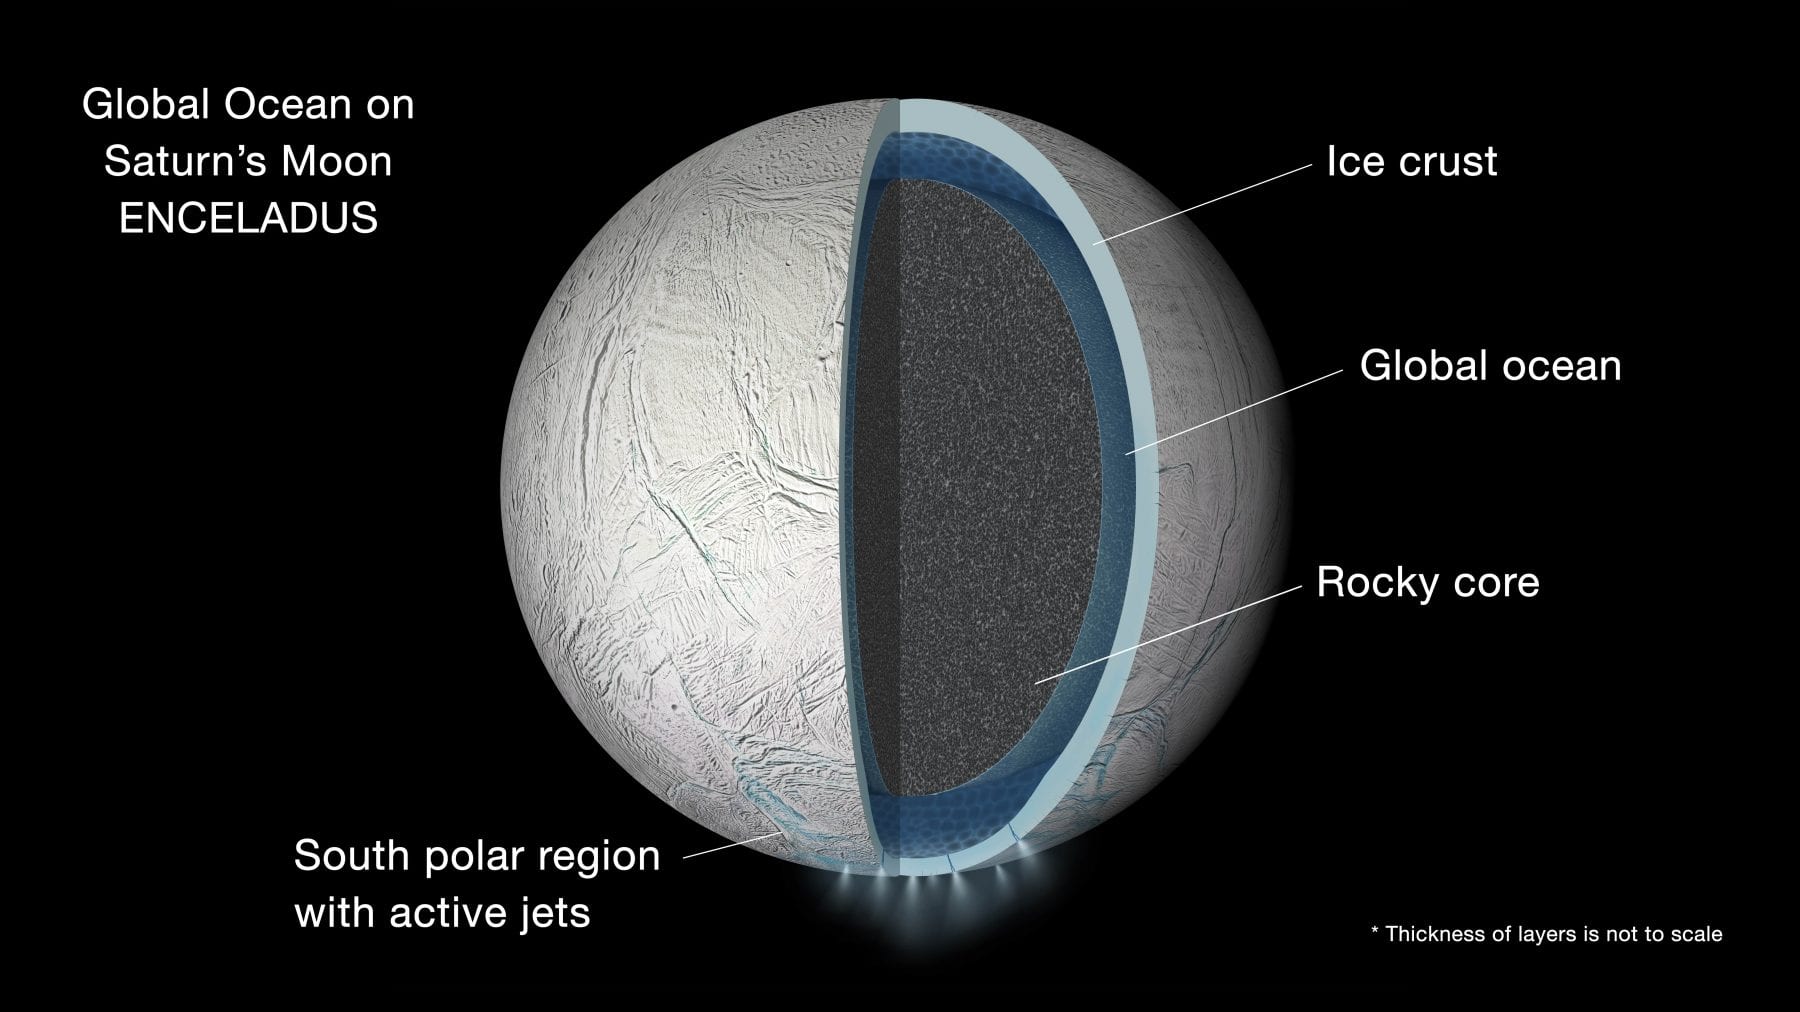 Иллюстрация интерьера Энцелада и его подземных океанов. Предоставлено: НАСА / Лаборатория реактивного движения - Калтех.